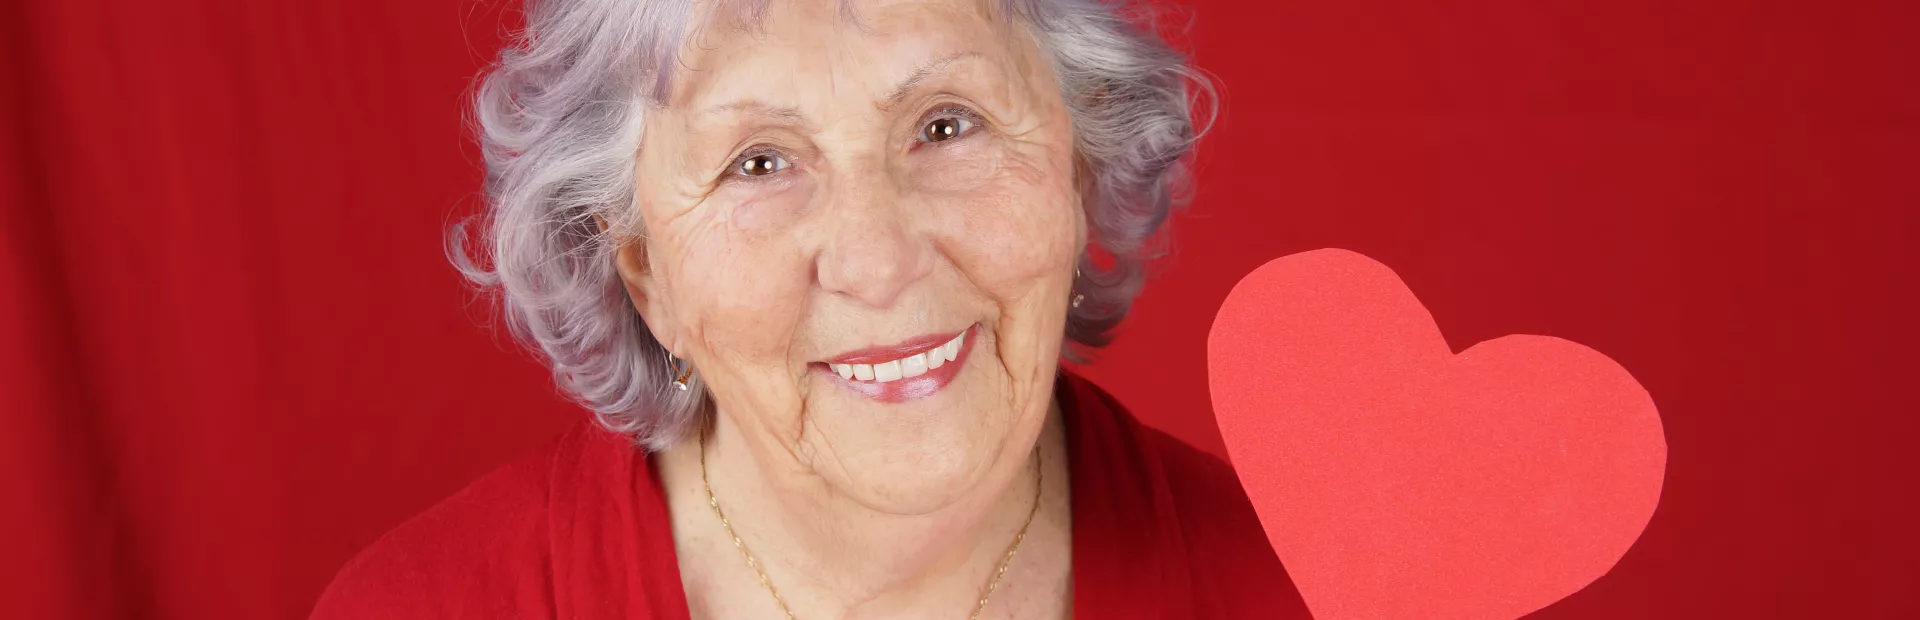 Mujer mayor sujetando un corazón de papel con fondo rojo